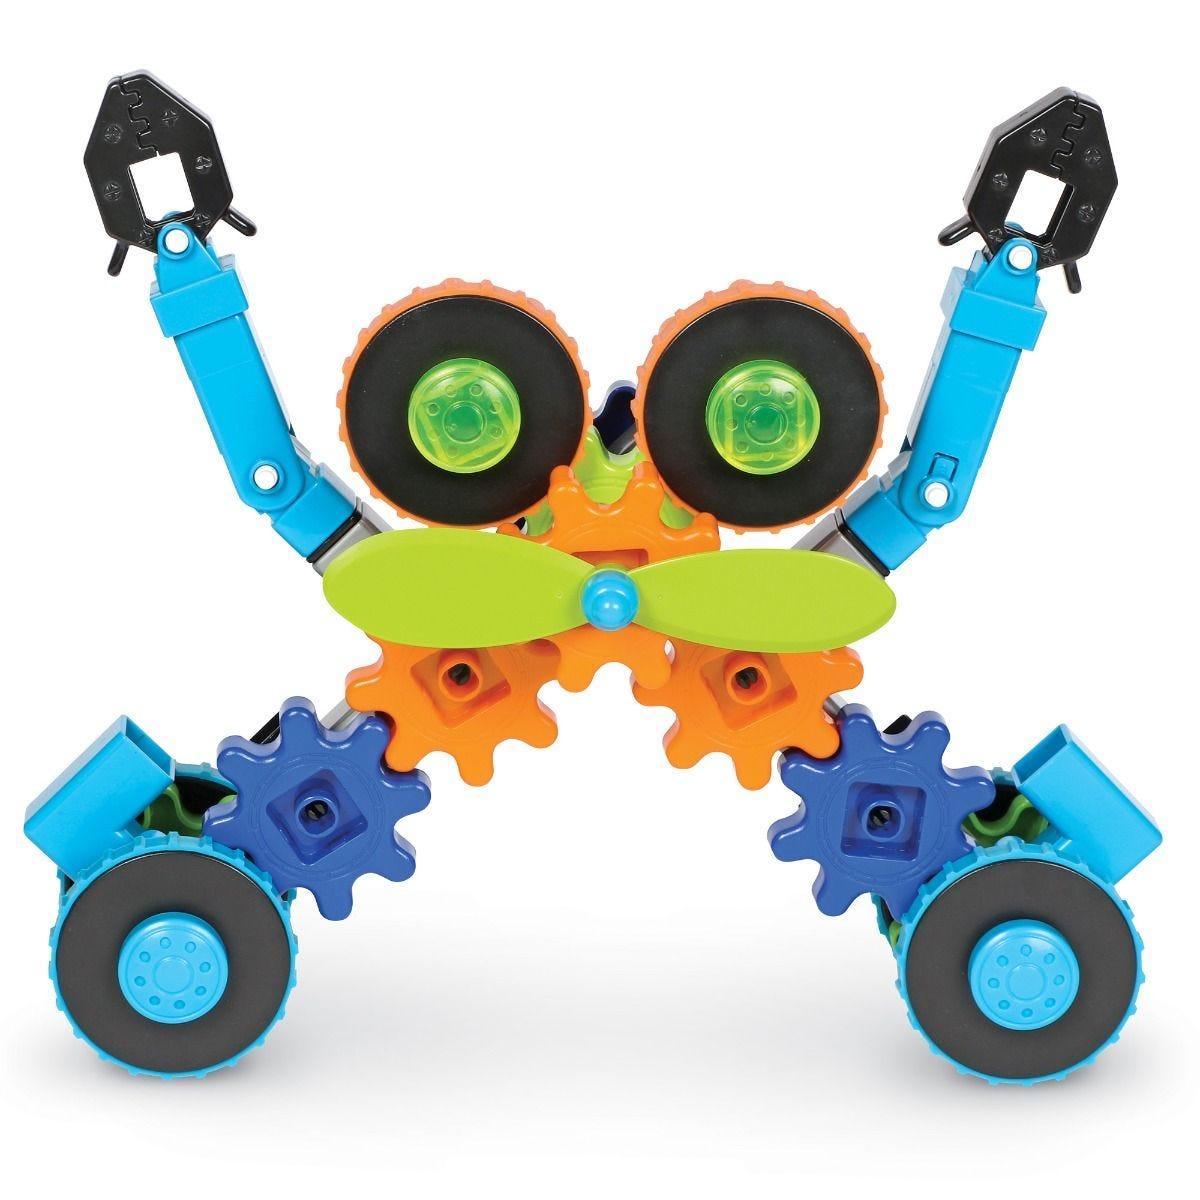 Learning Resources Đồ chơi xây dựng bánh răng cưa robot chuyển động - Gears! Gears! Gears! Robots in Motion